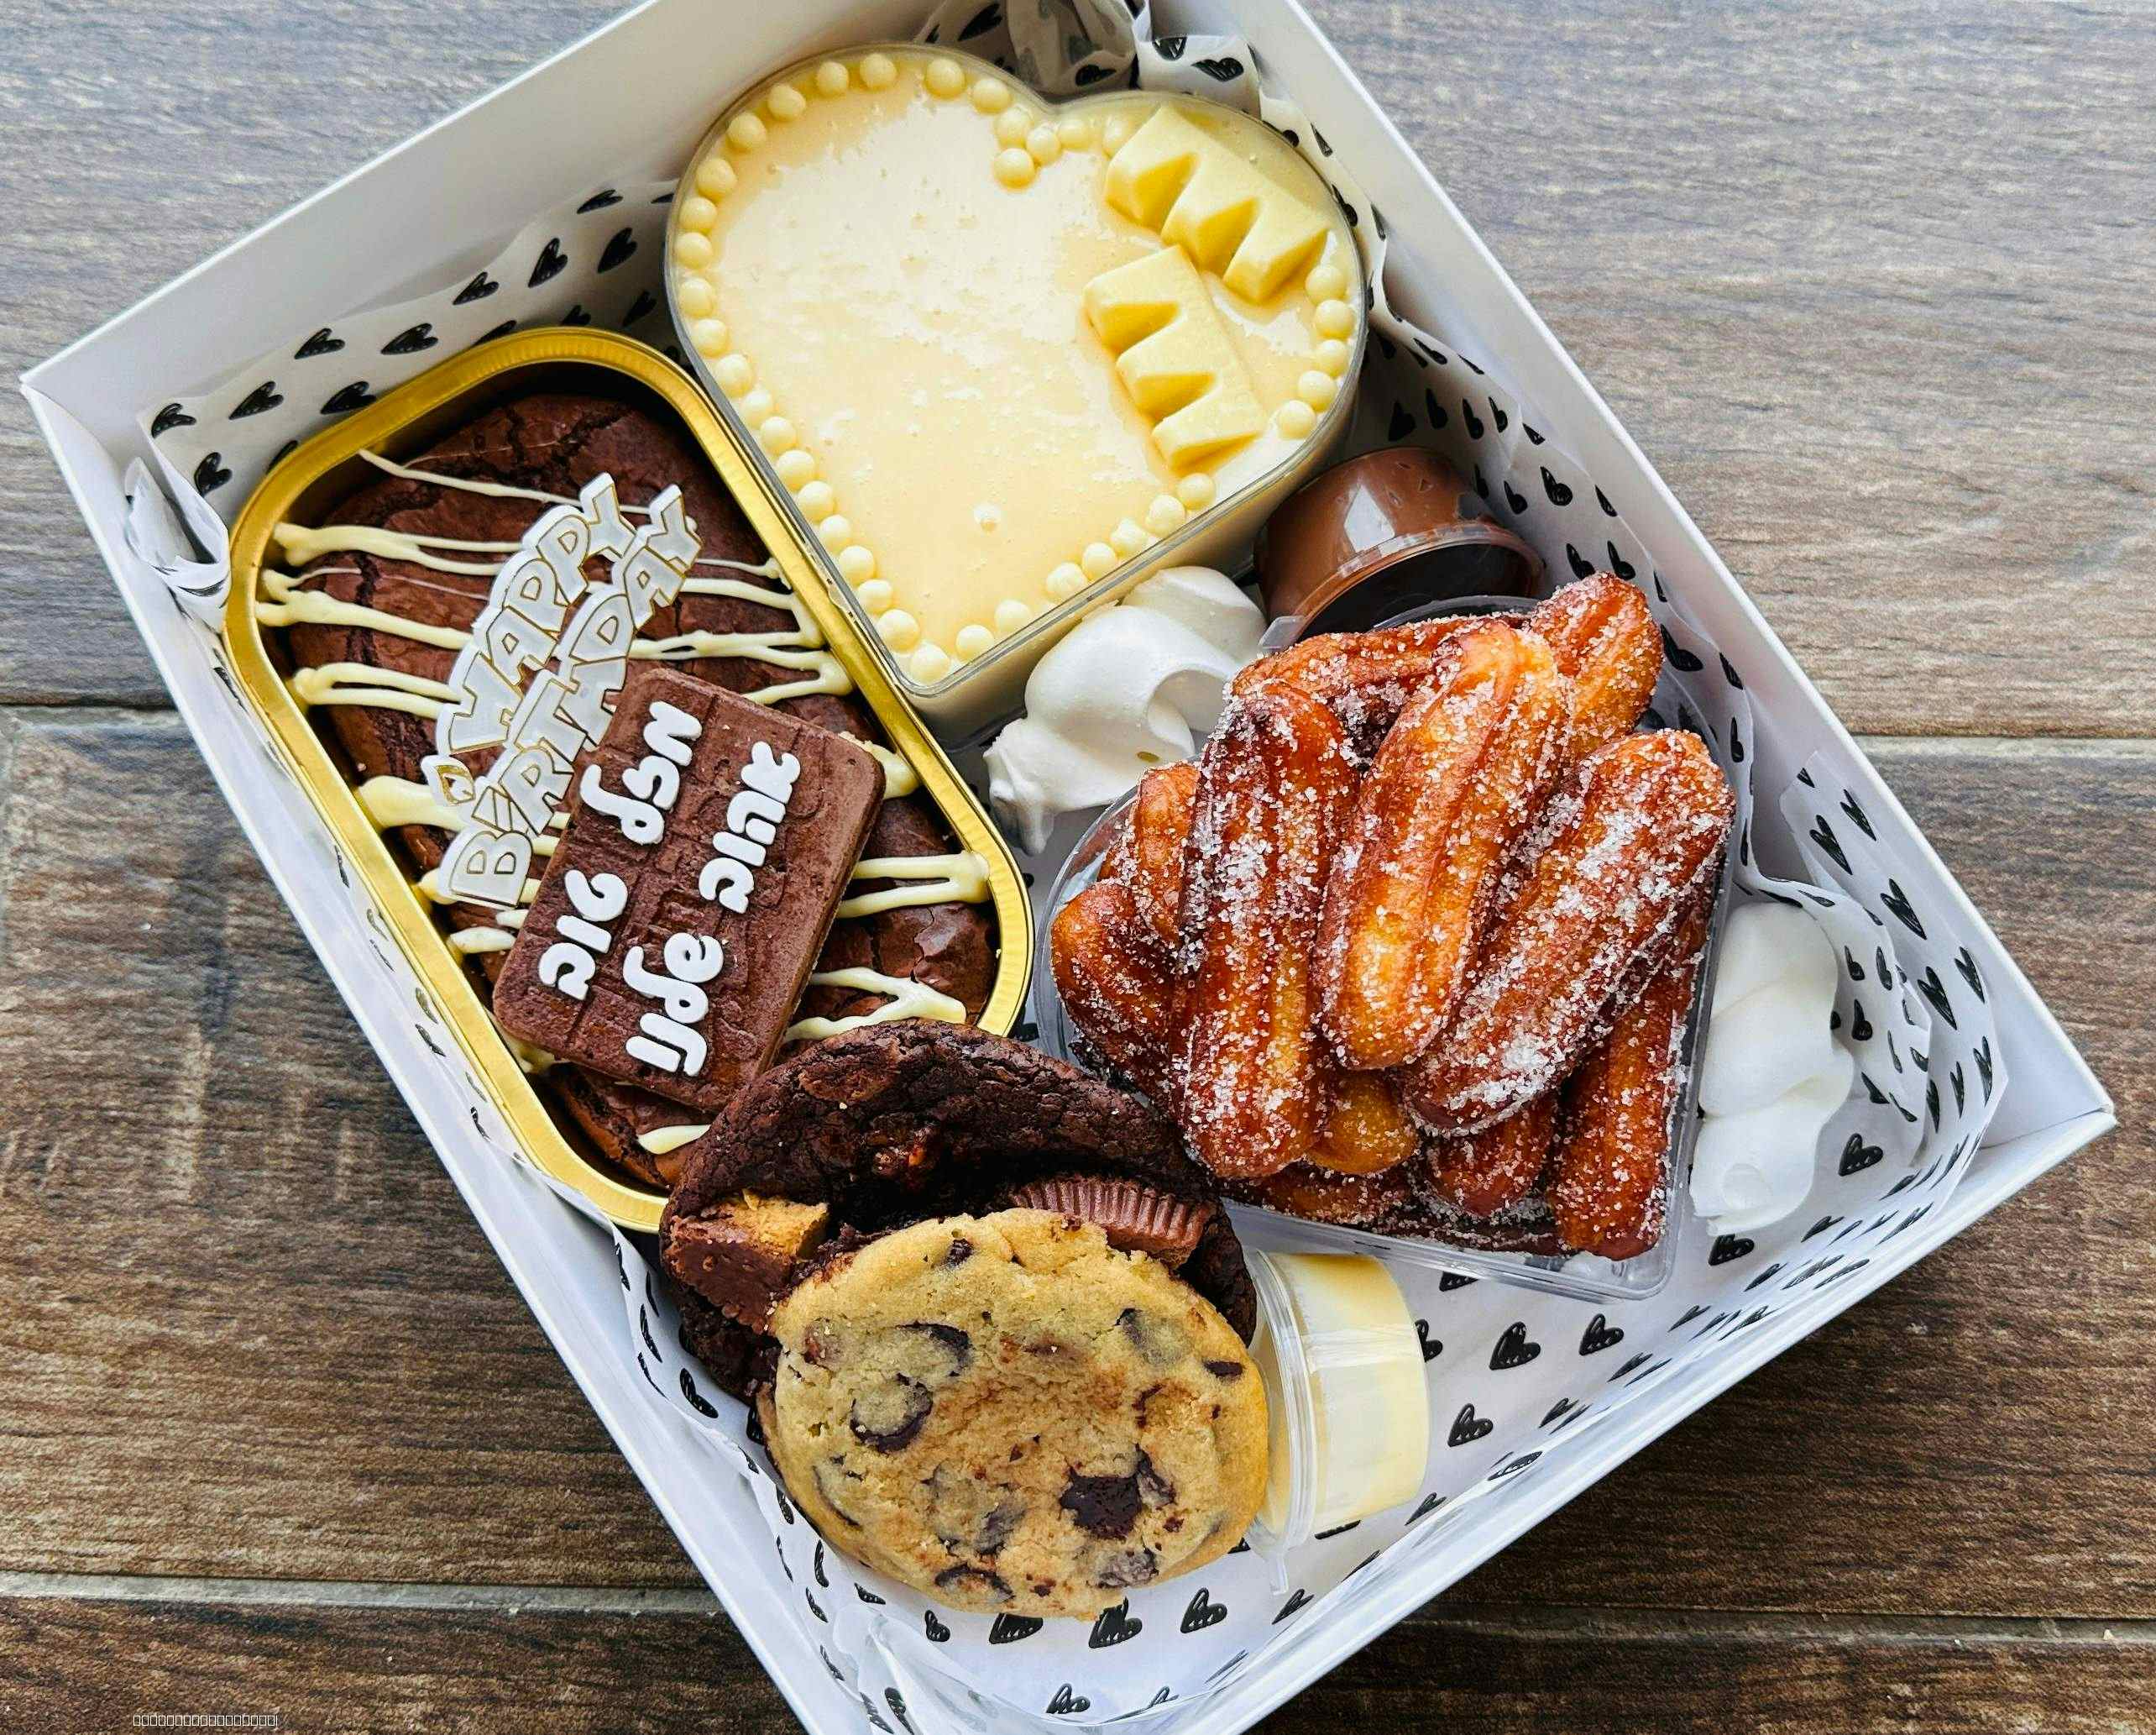 מארז קינוחים שוקולדי - בראוניז מושחת, צ׳ורוס
עוגיות שוקוצ׳יפס ומוס בקופסת לב זוגית